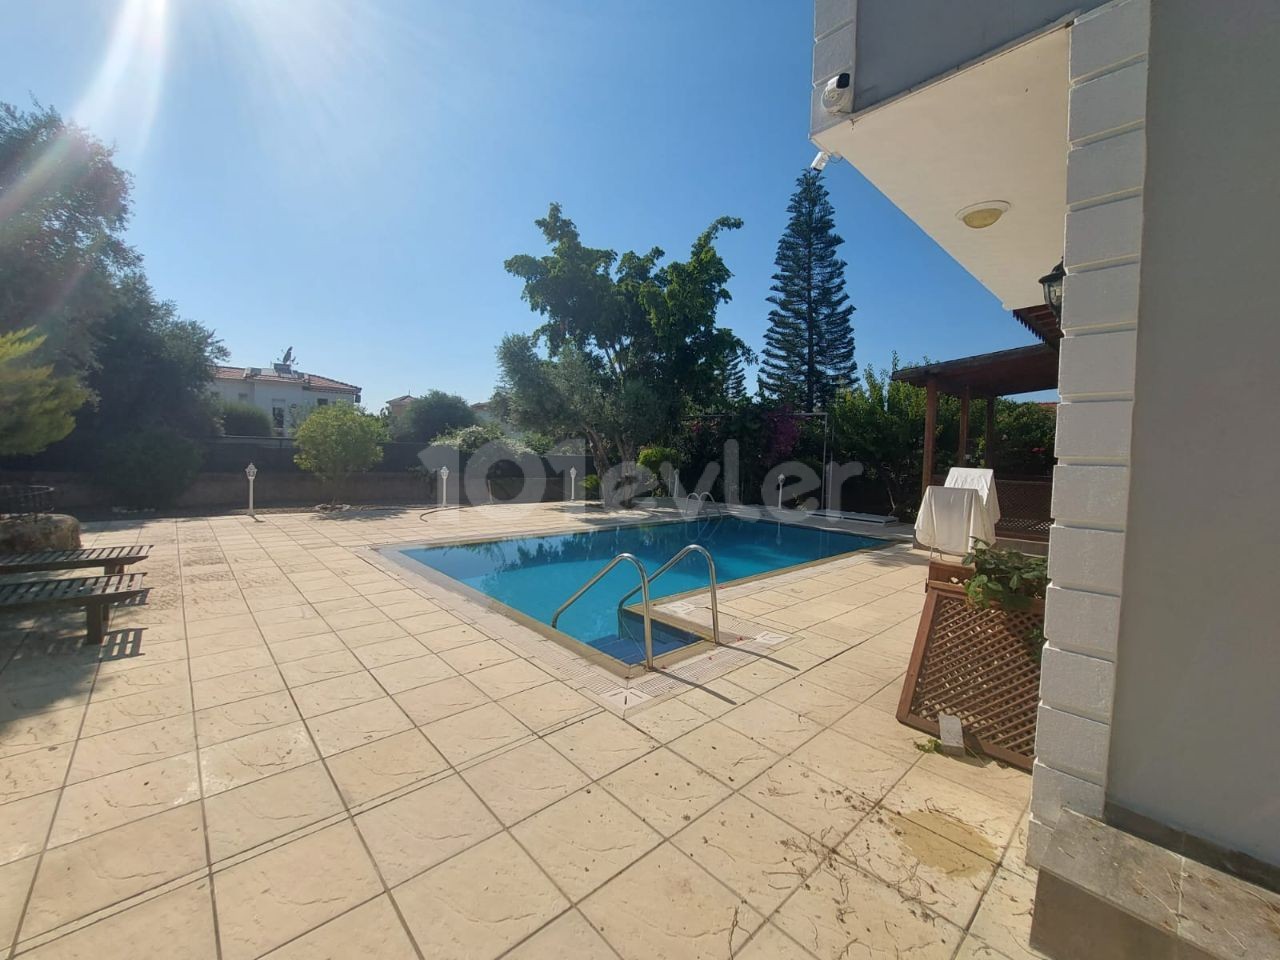 Villa zum Verkauf in sehr guter Lage in Ozanköy, Kyrenia